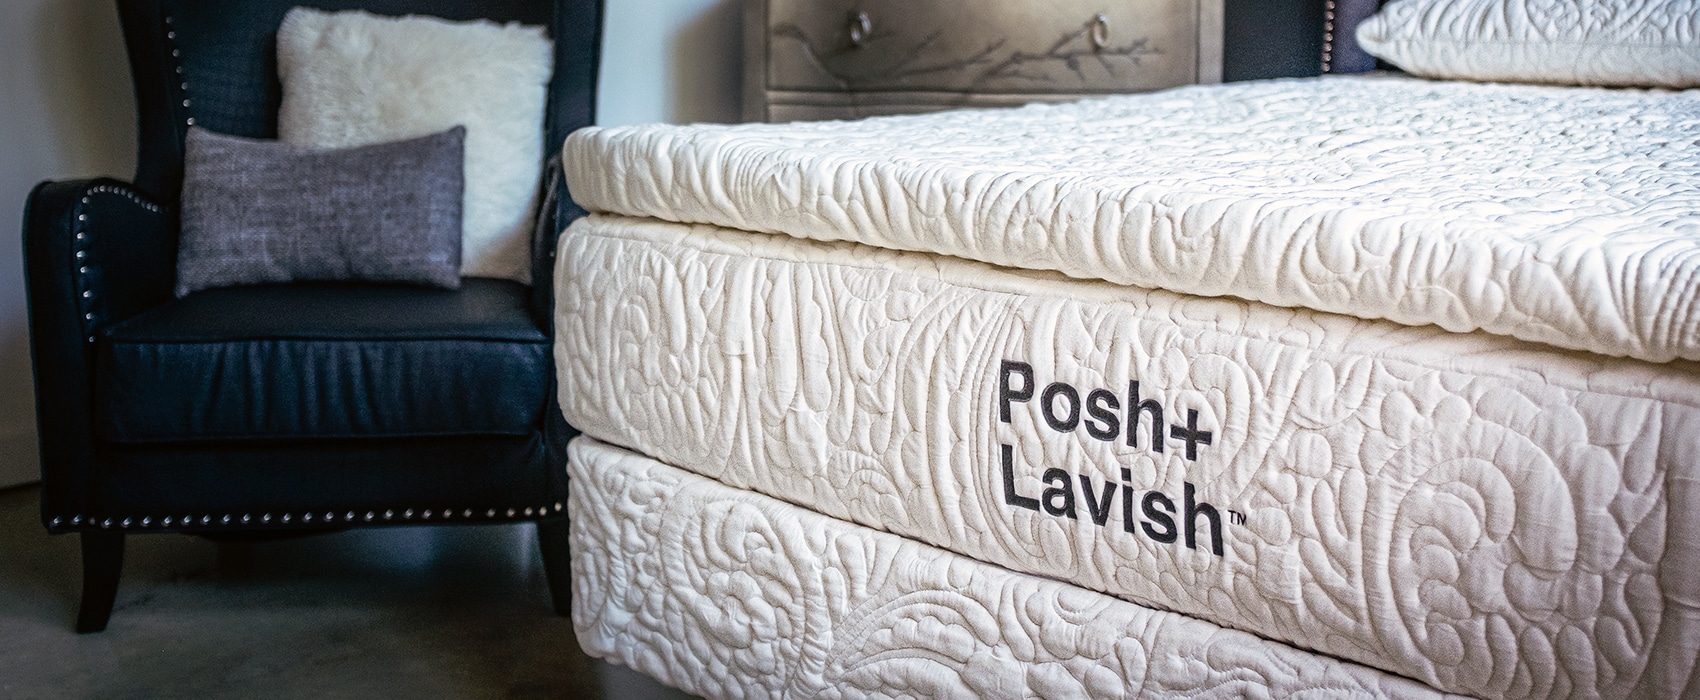 Close up of Posh Lavish Mattress